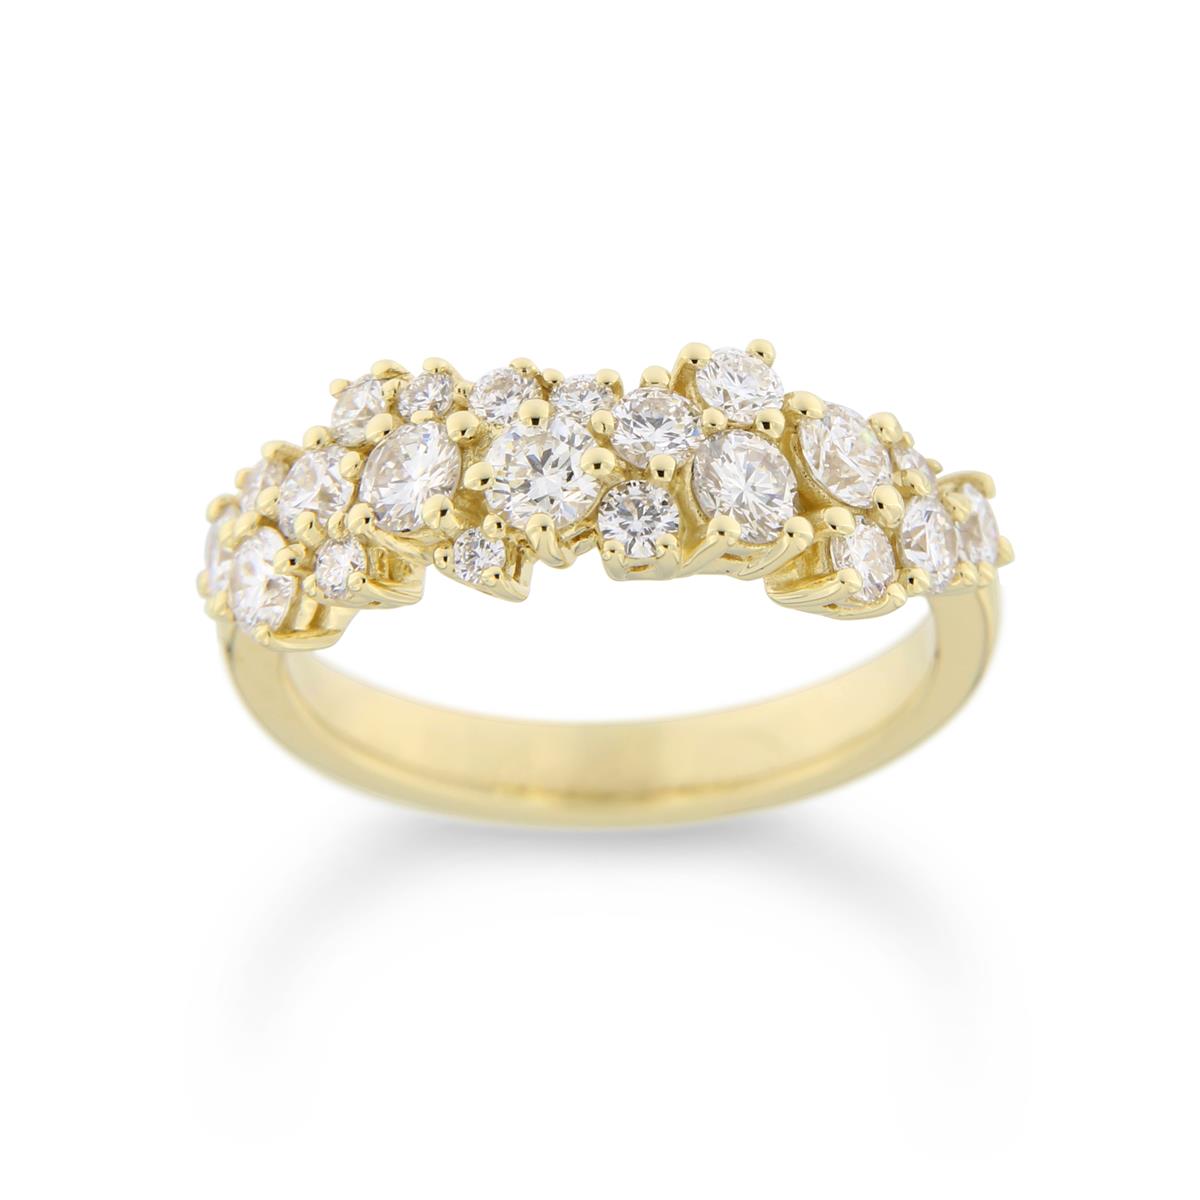 Katie g. Jewellery - Diamond Cloud Ring_14kt. Gelbgold mit 21 Brillianten_EUR auf Anfrage